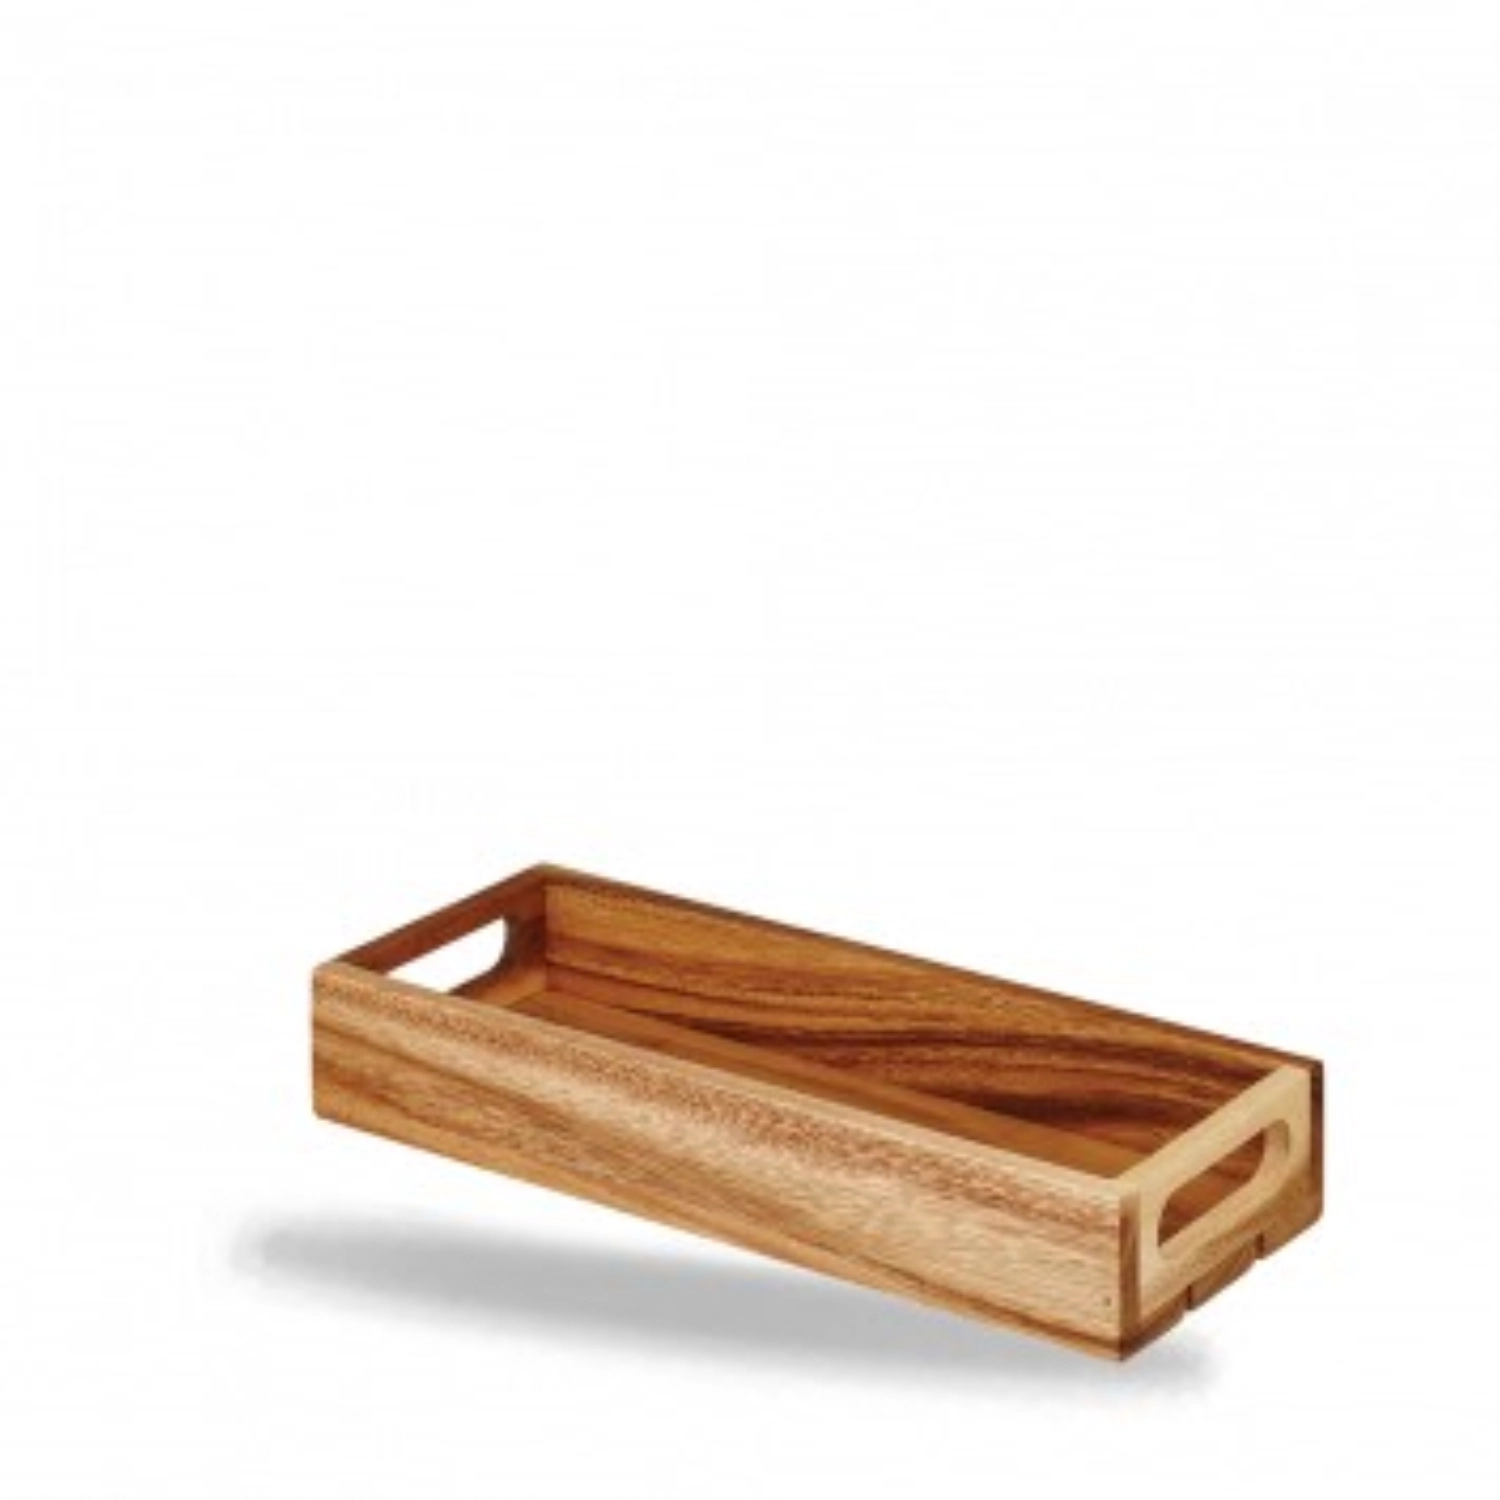 Alchemy wood petit panier de service 30x11.8x4.8cm